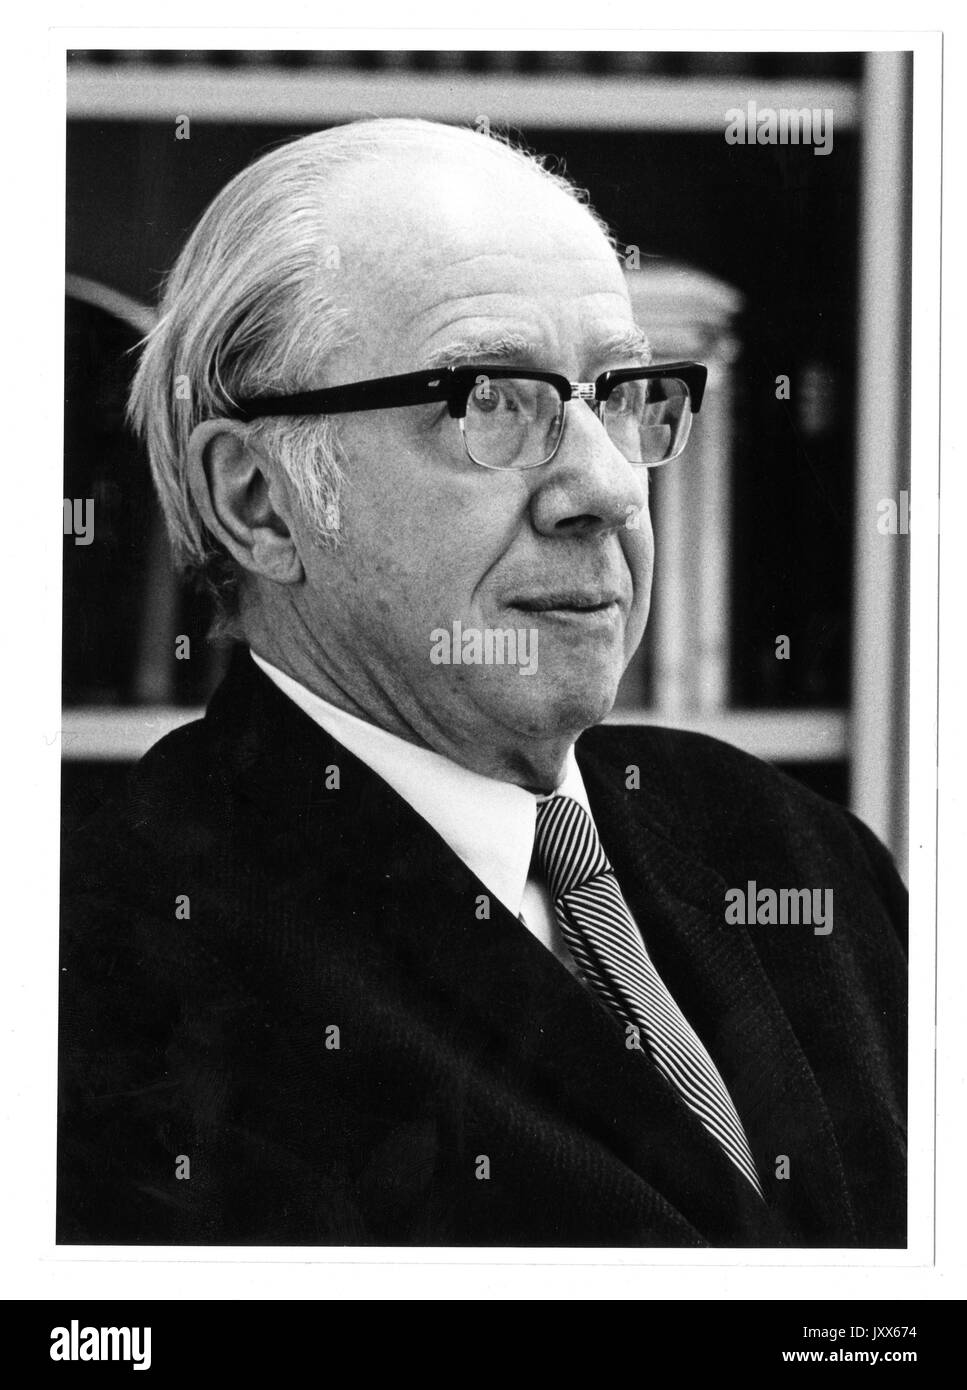 Don Cameron, Allen portrait photographique, assis, de la poitrine vers le haut, vue de trois-quarts, a 58 ans d'âge, 1963. Banque D'Images